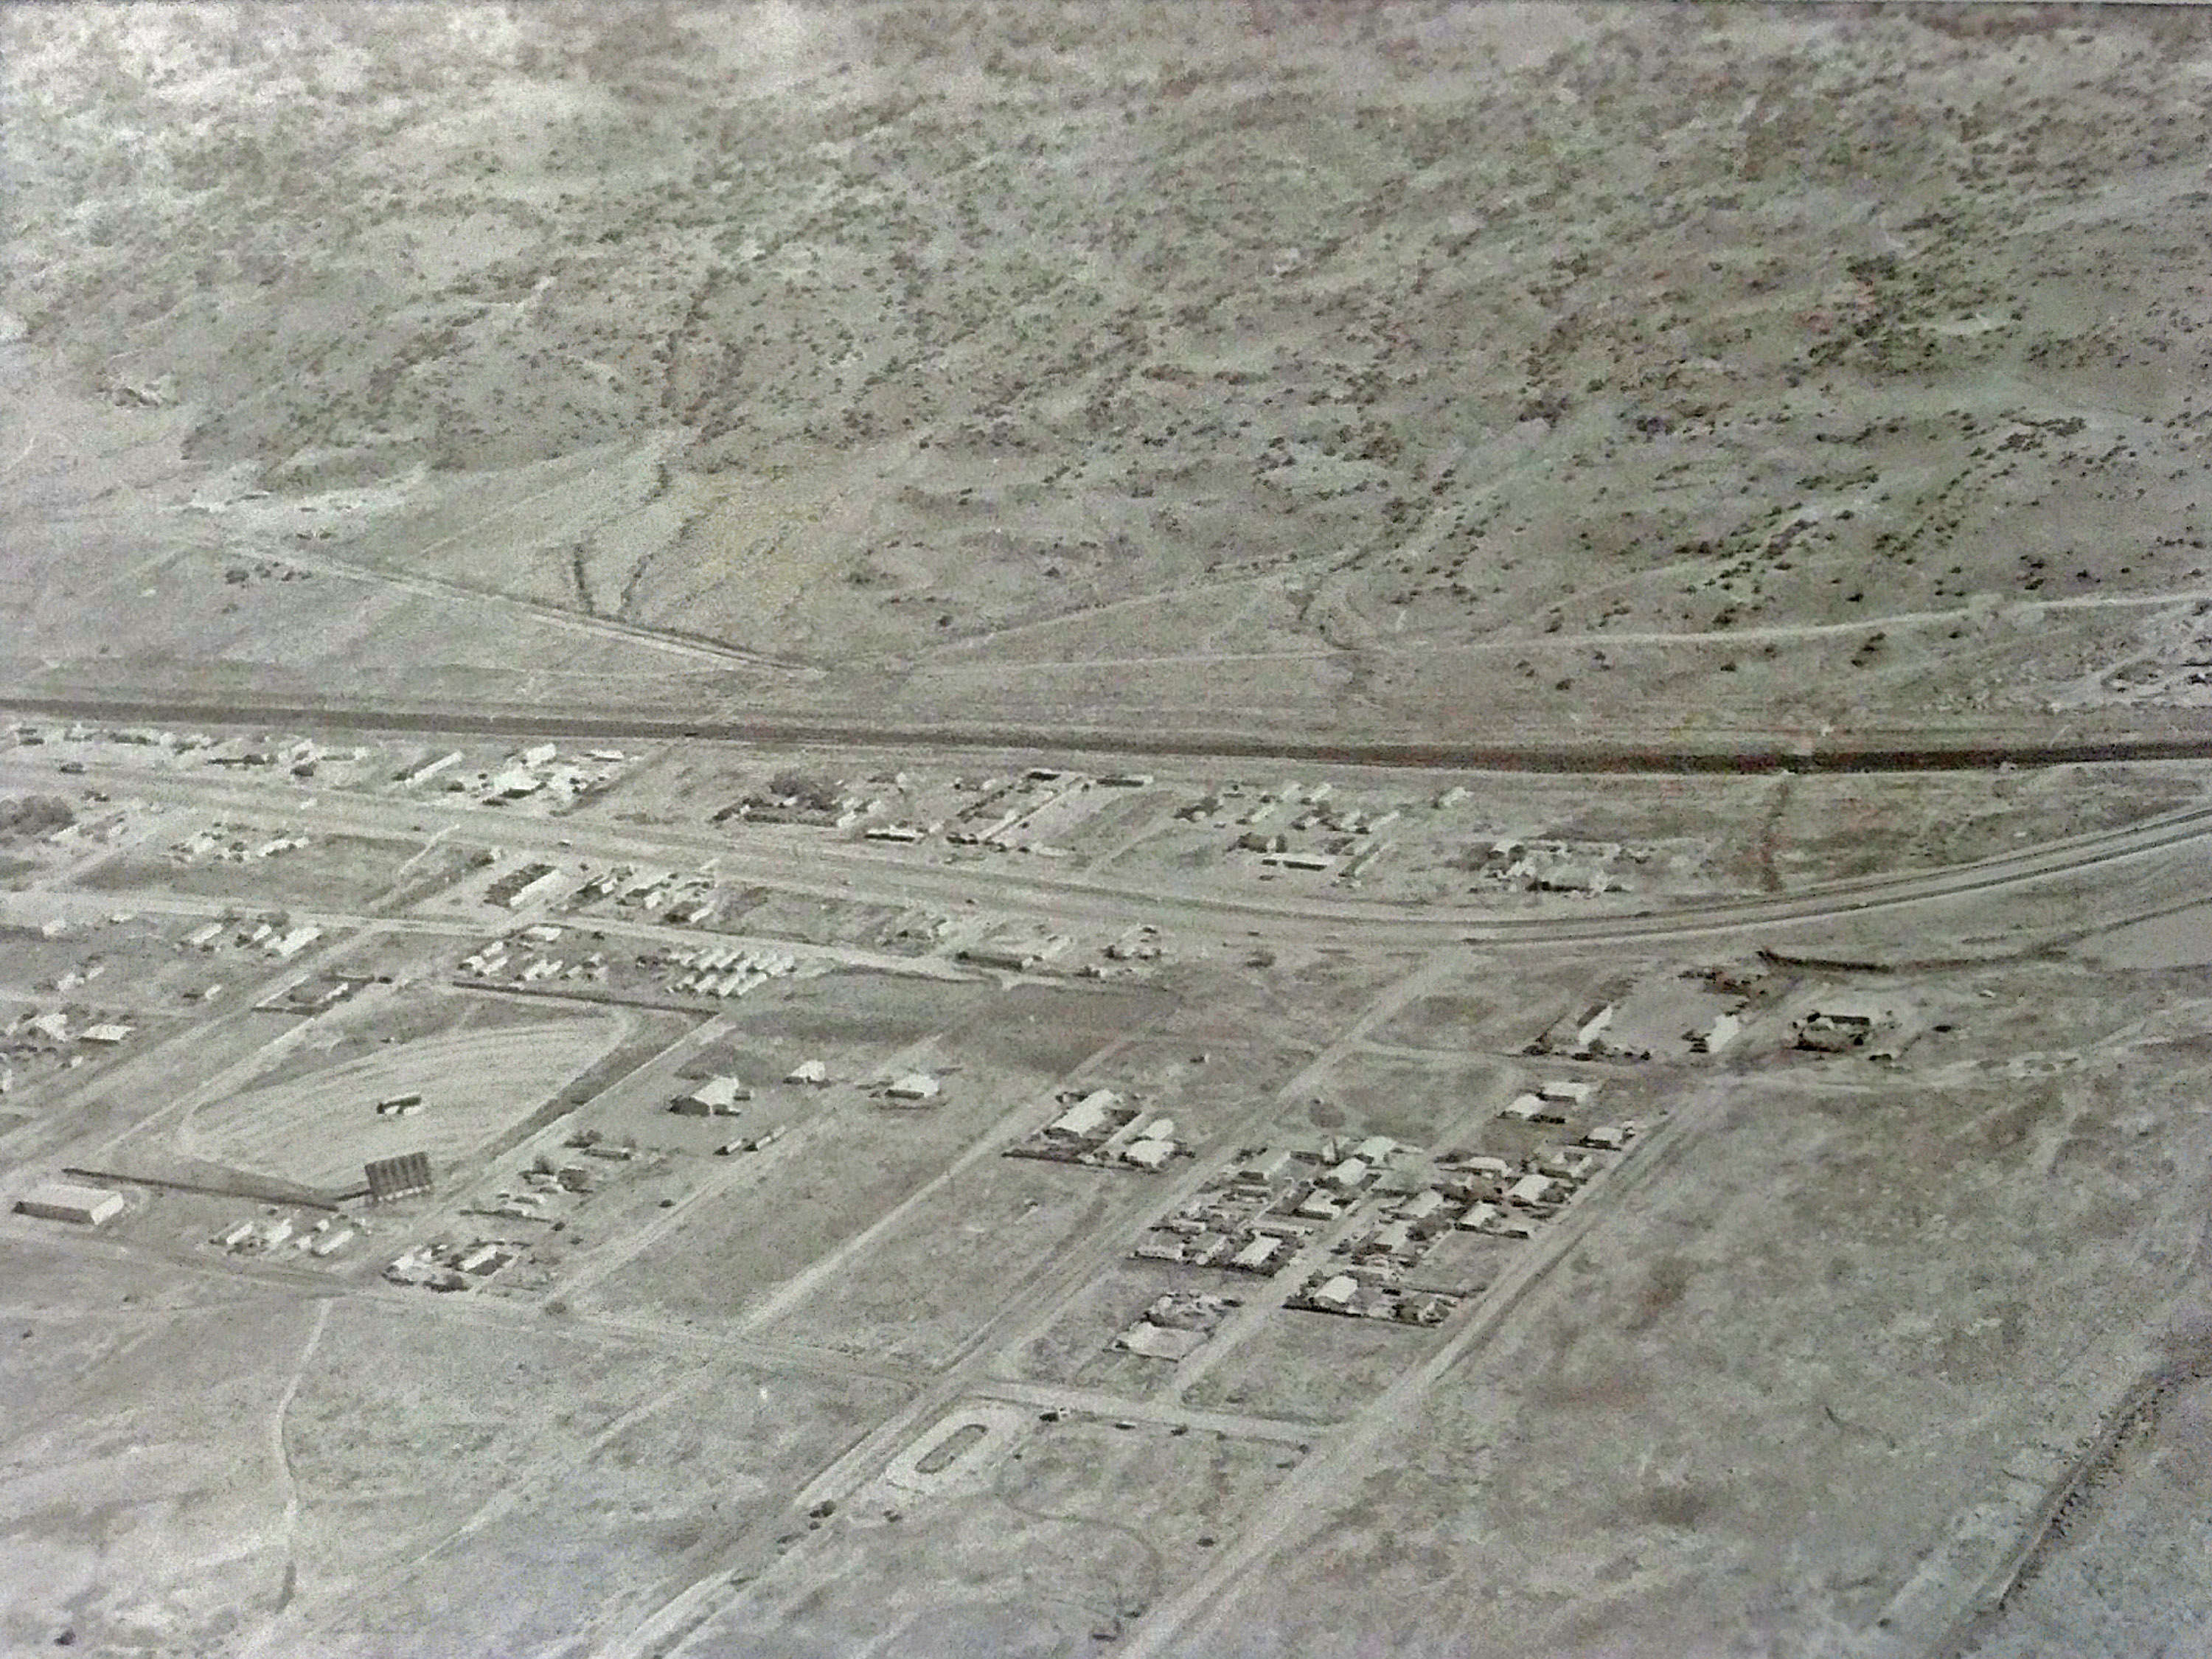 Village of Milan Aerial 1960